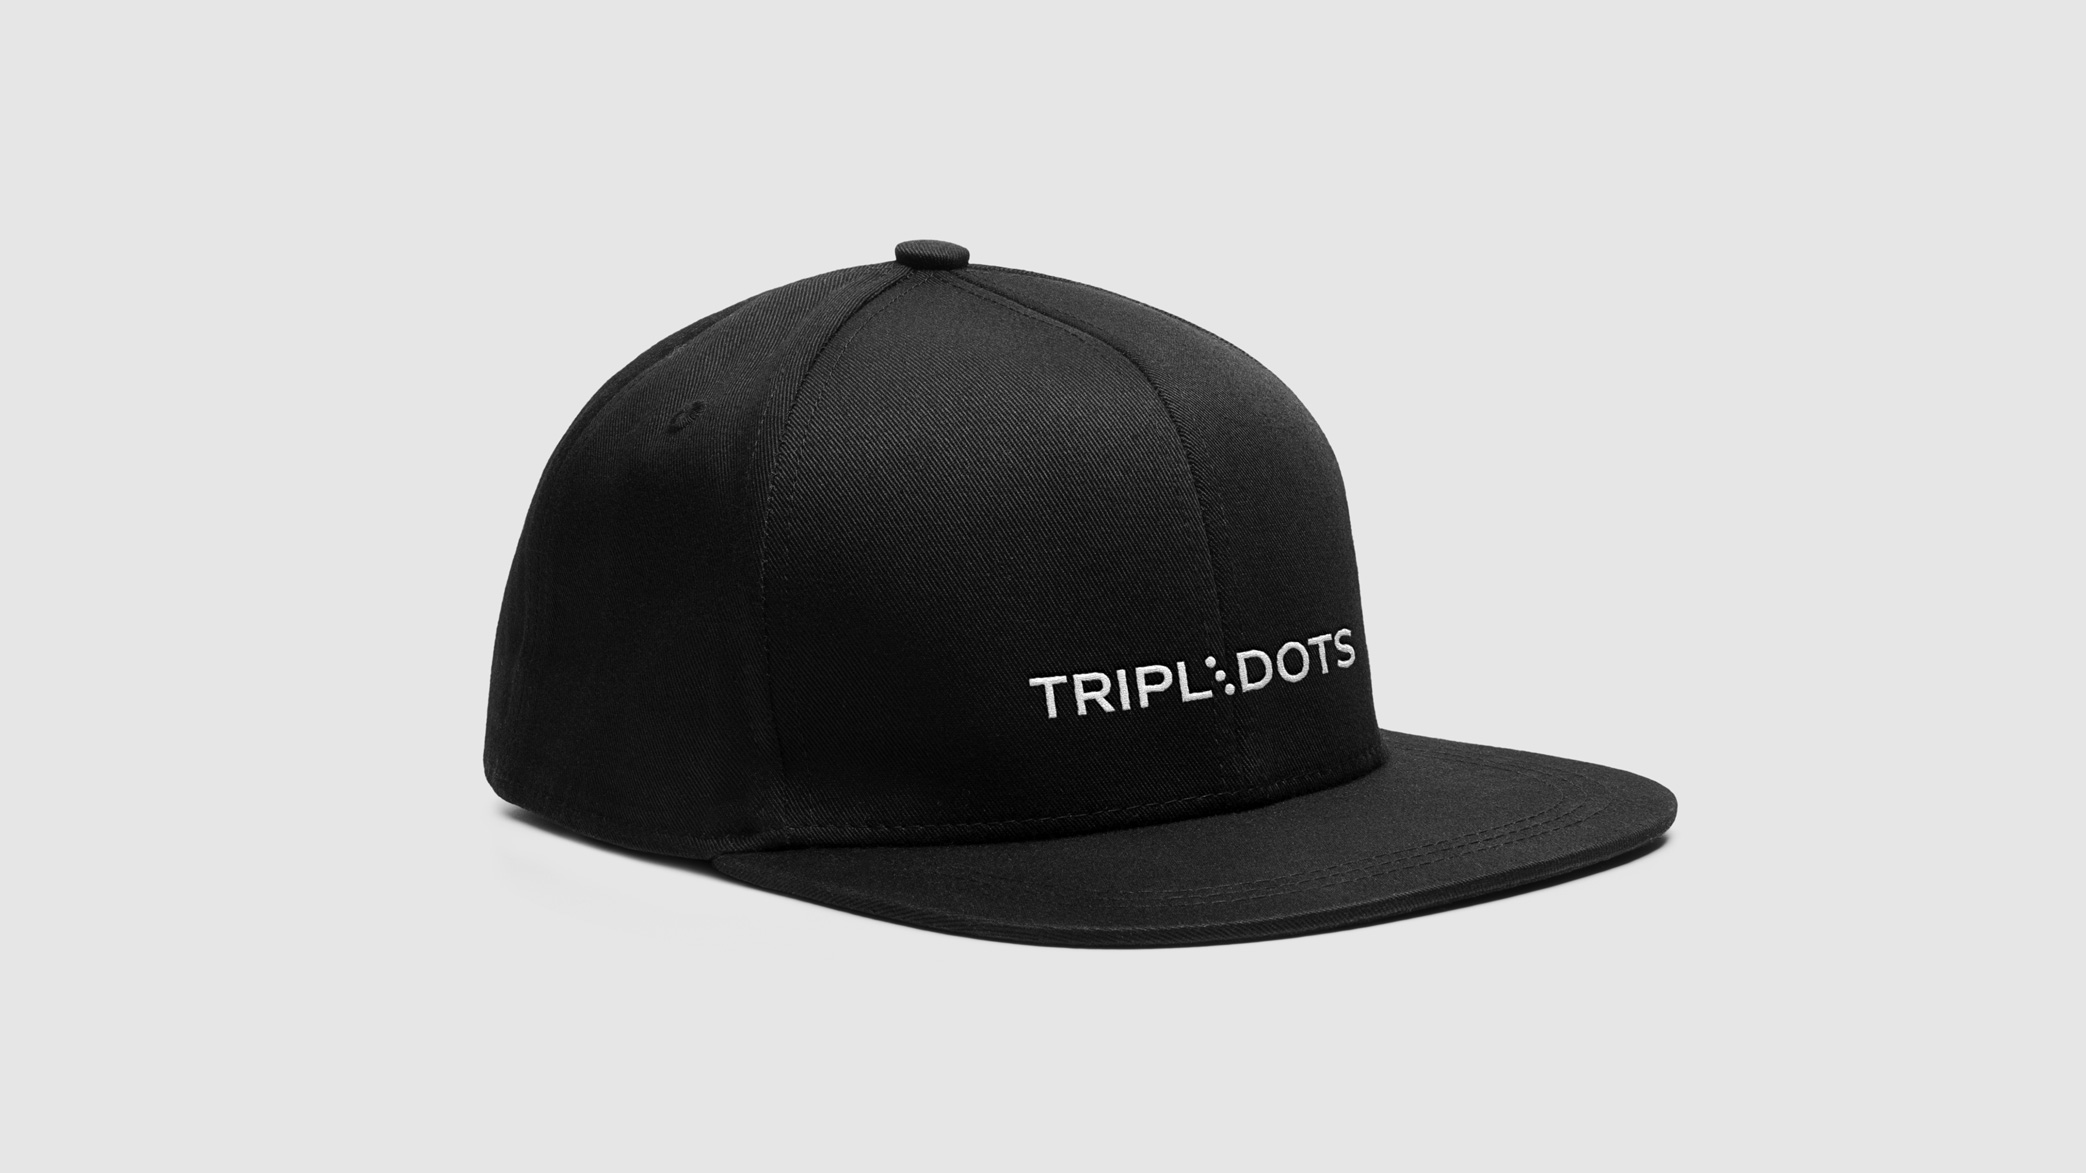 Tripledots_cap